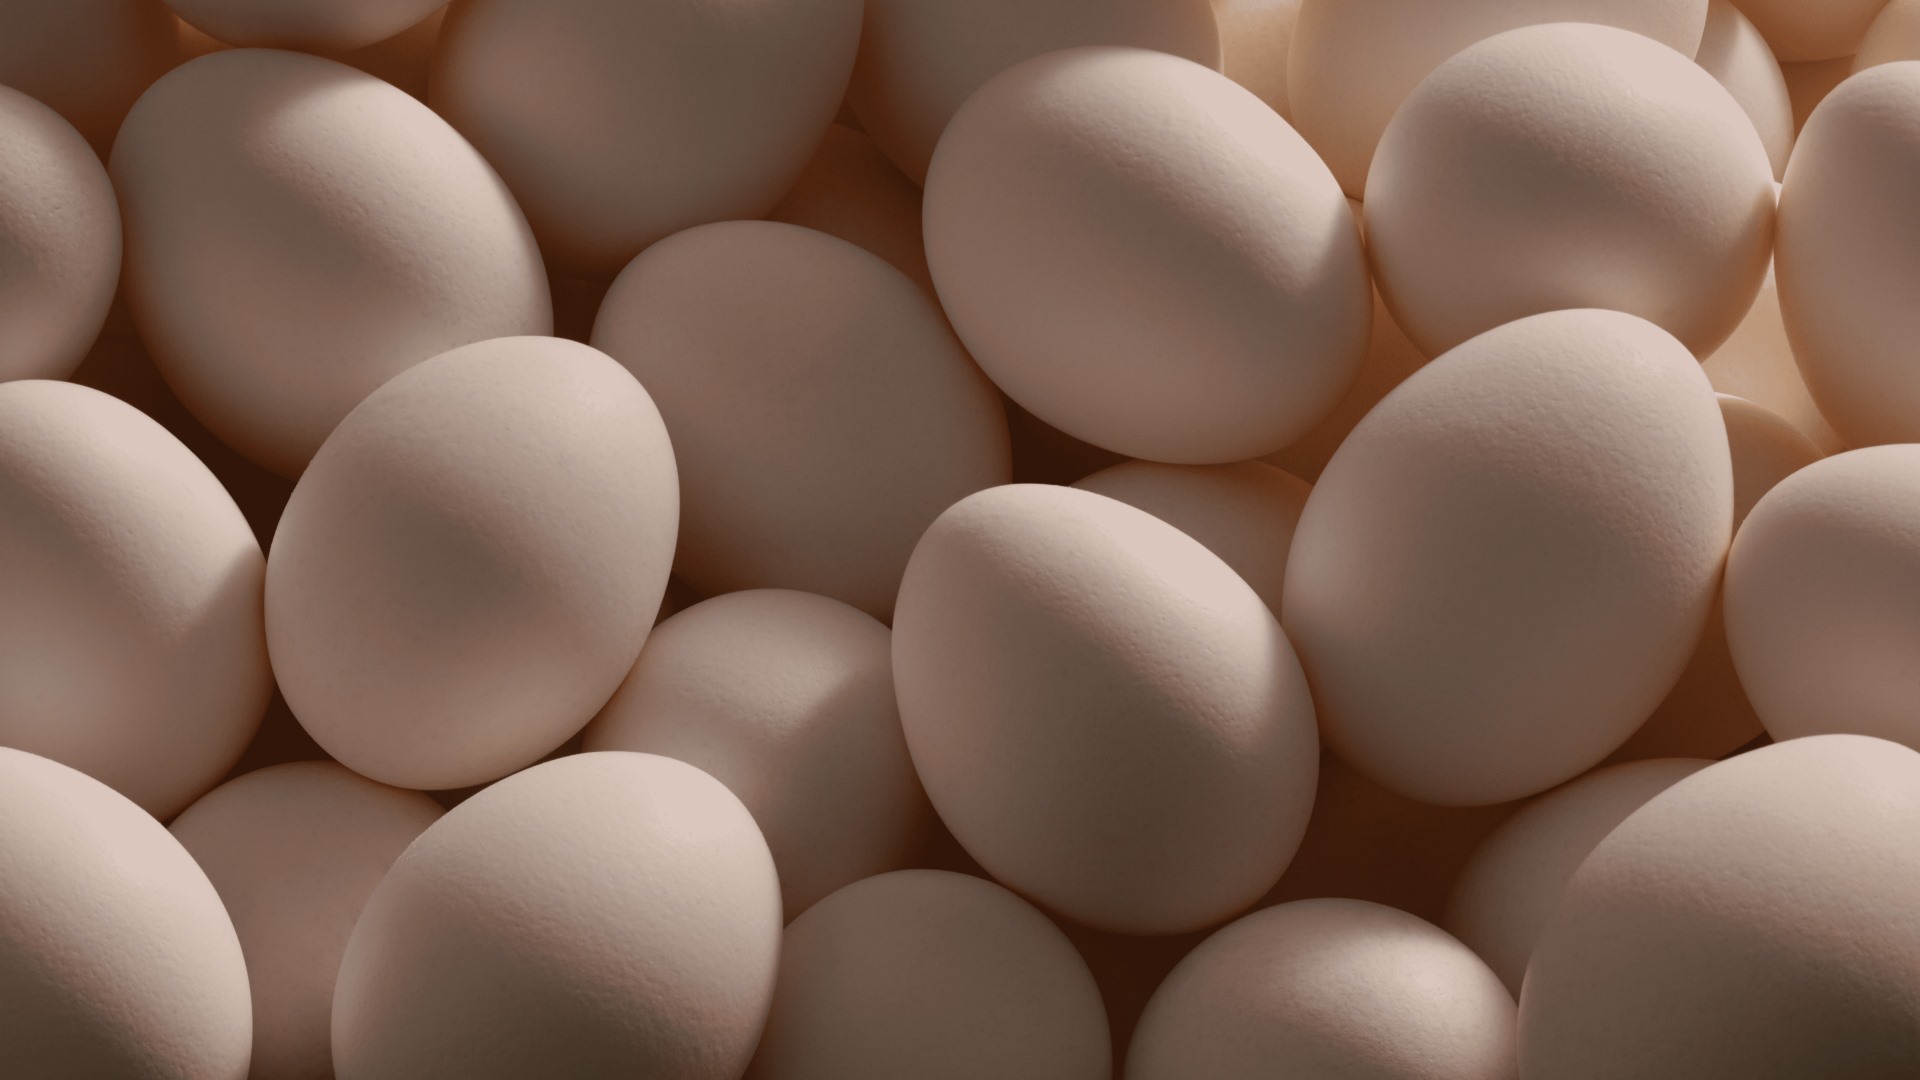 [Perú] El 100% de los huevos servidos en sus restaurantes provienen de gallinas libres de jaula